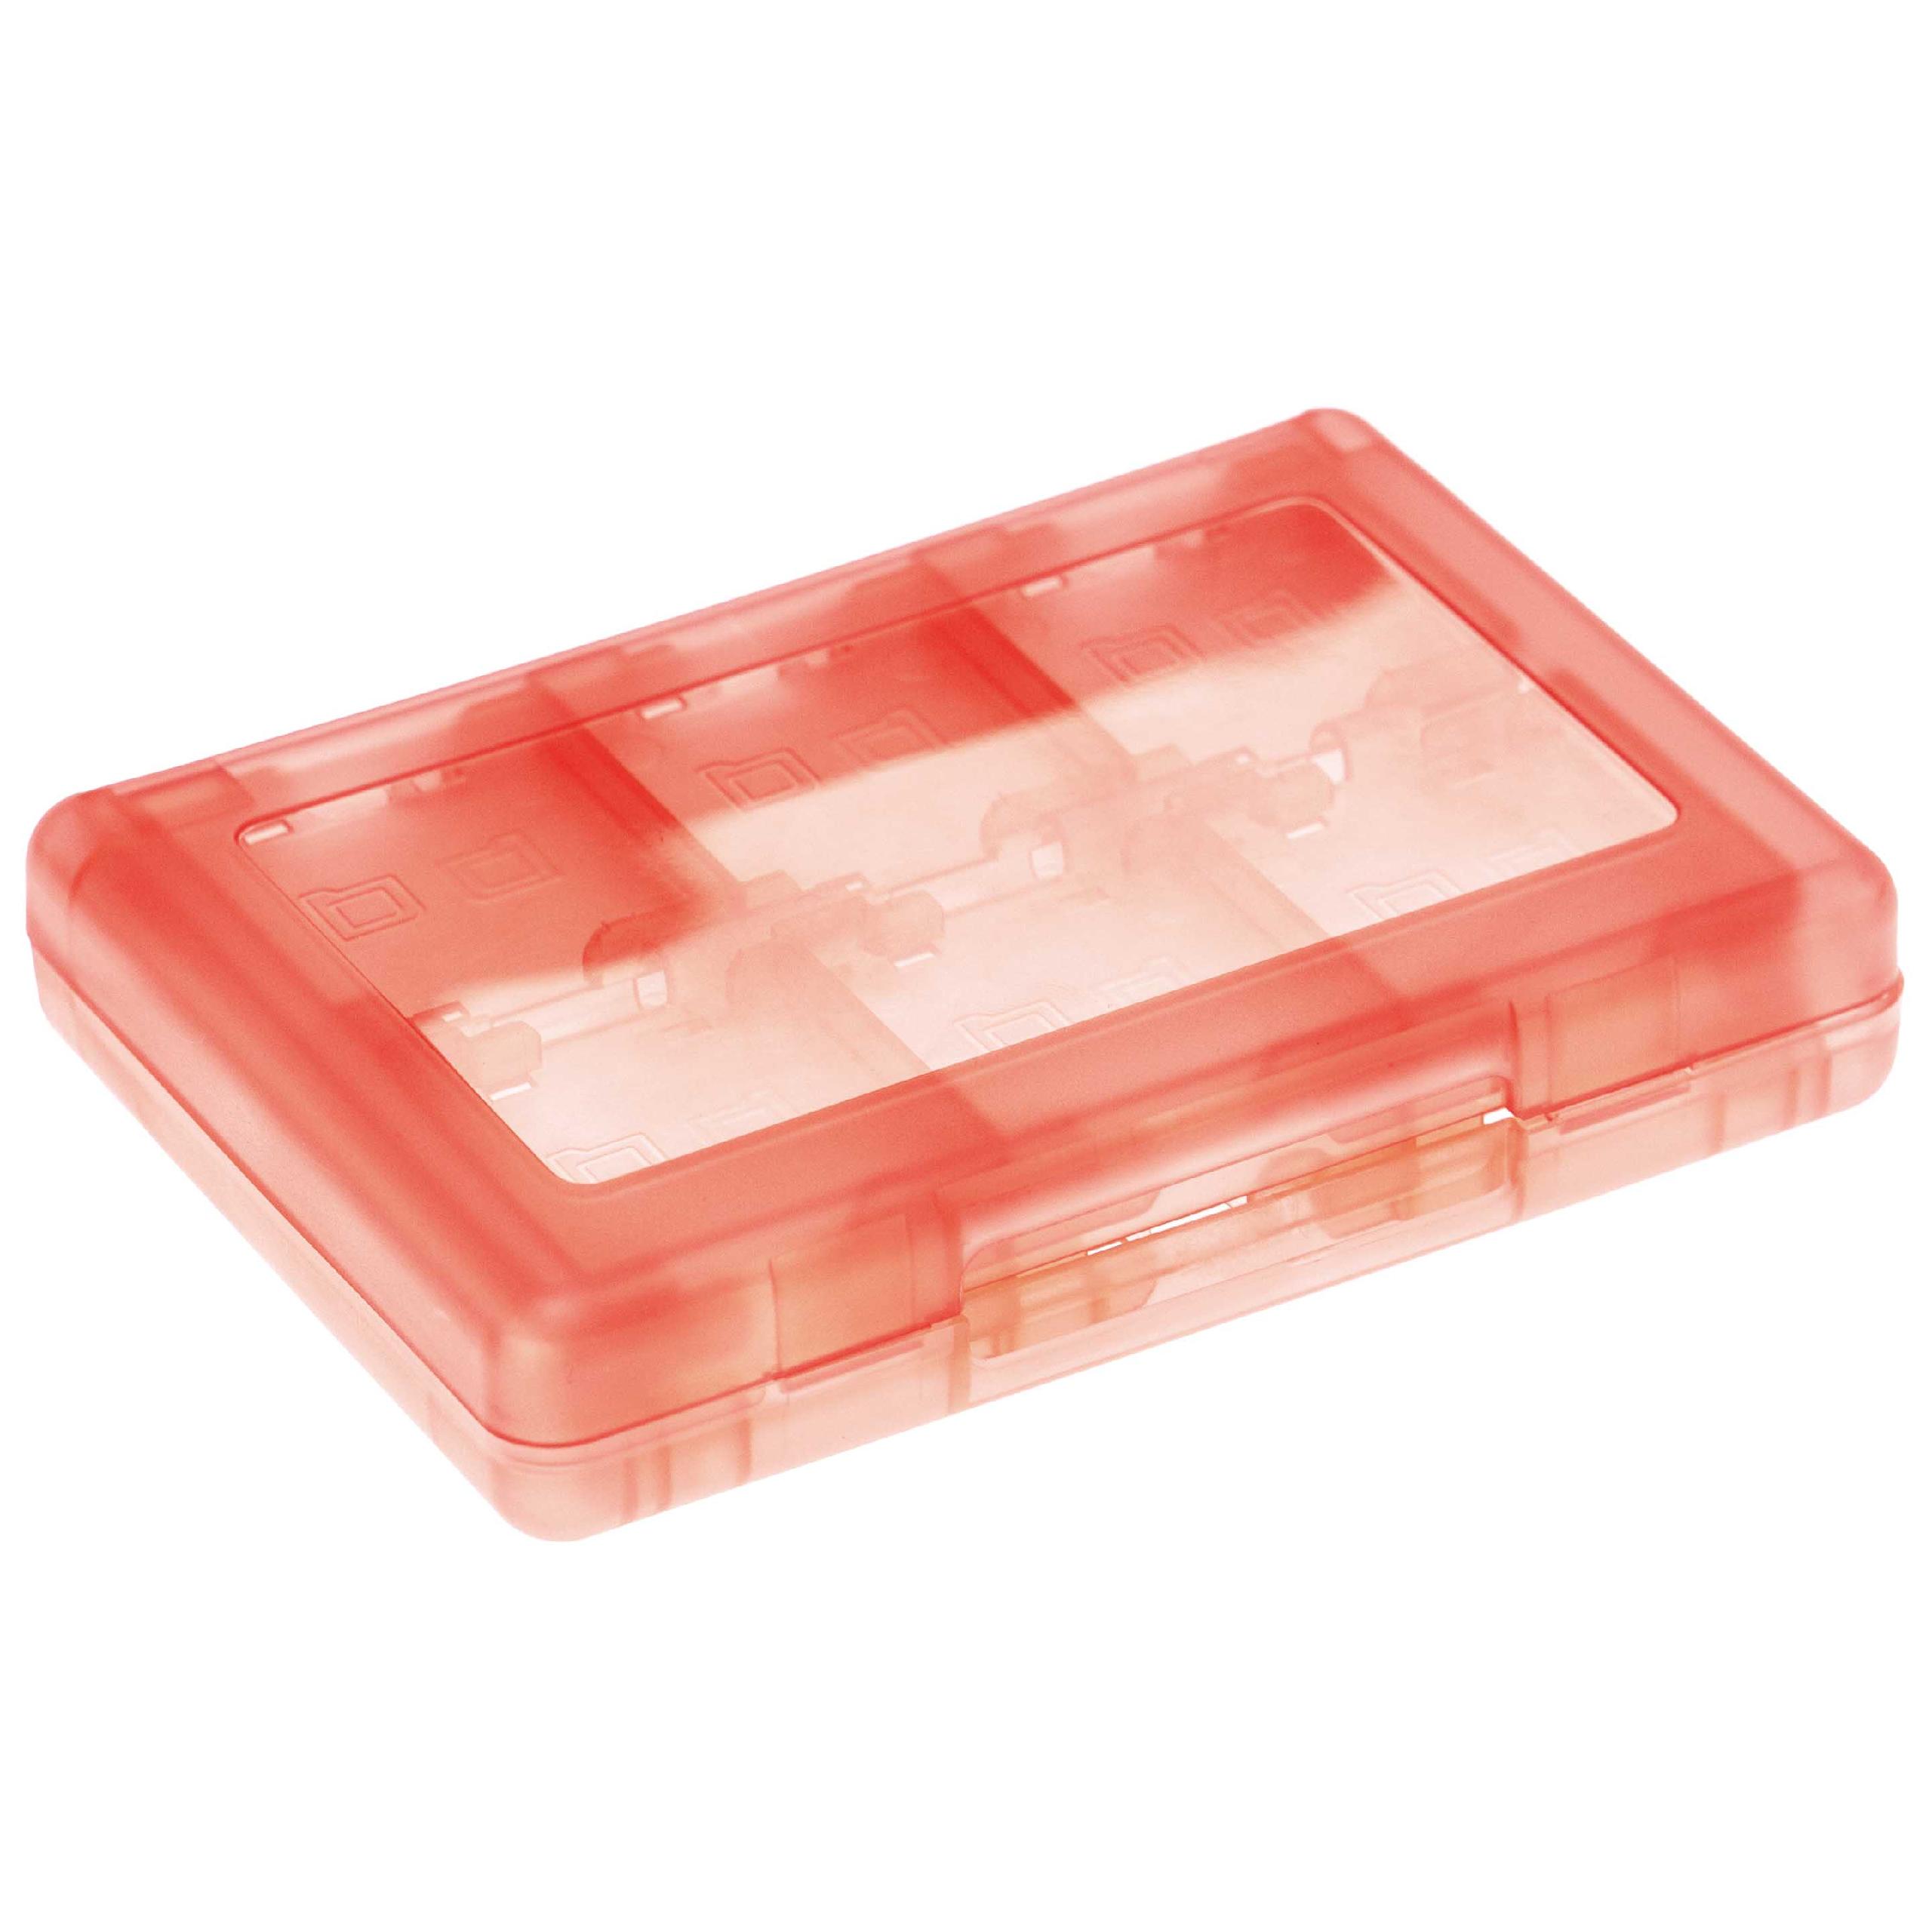 Etui für Konsolenspiele und Speicherkarten passend für Nintendo 3DS - Case, Kunststoff, transparent / rot